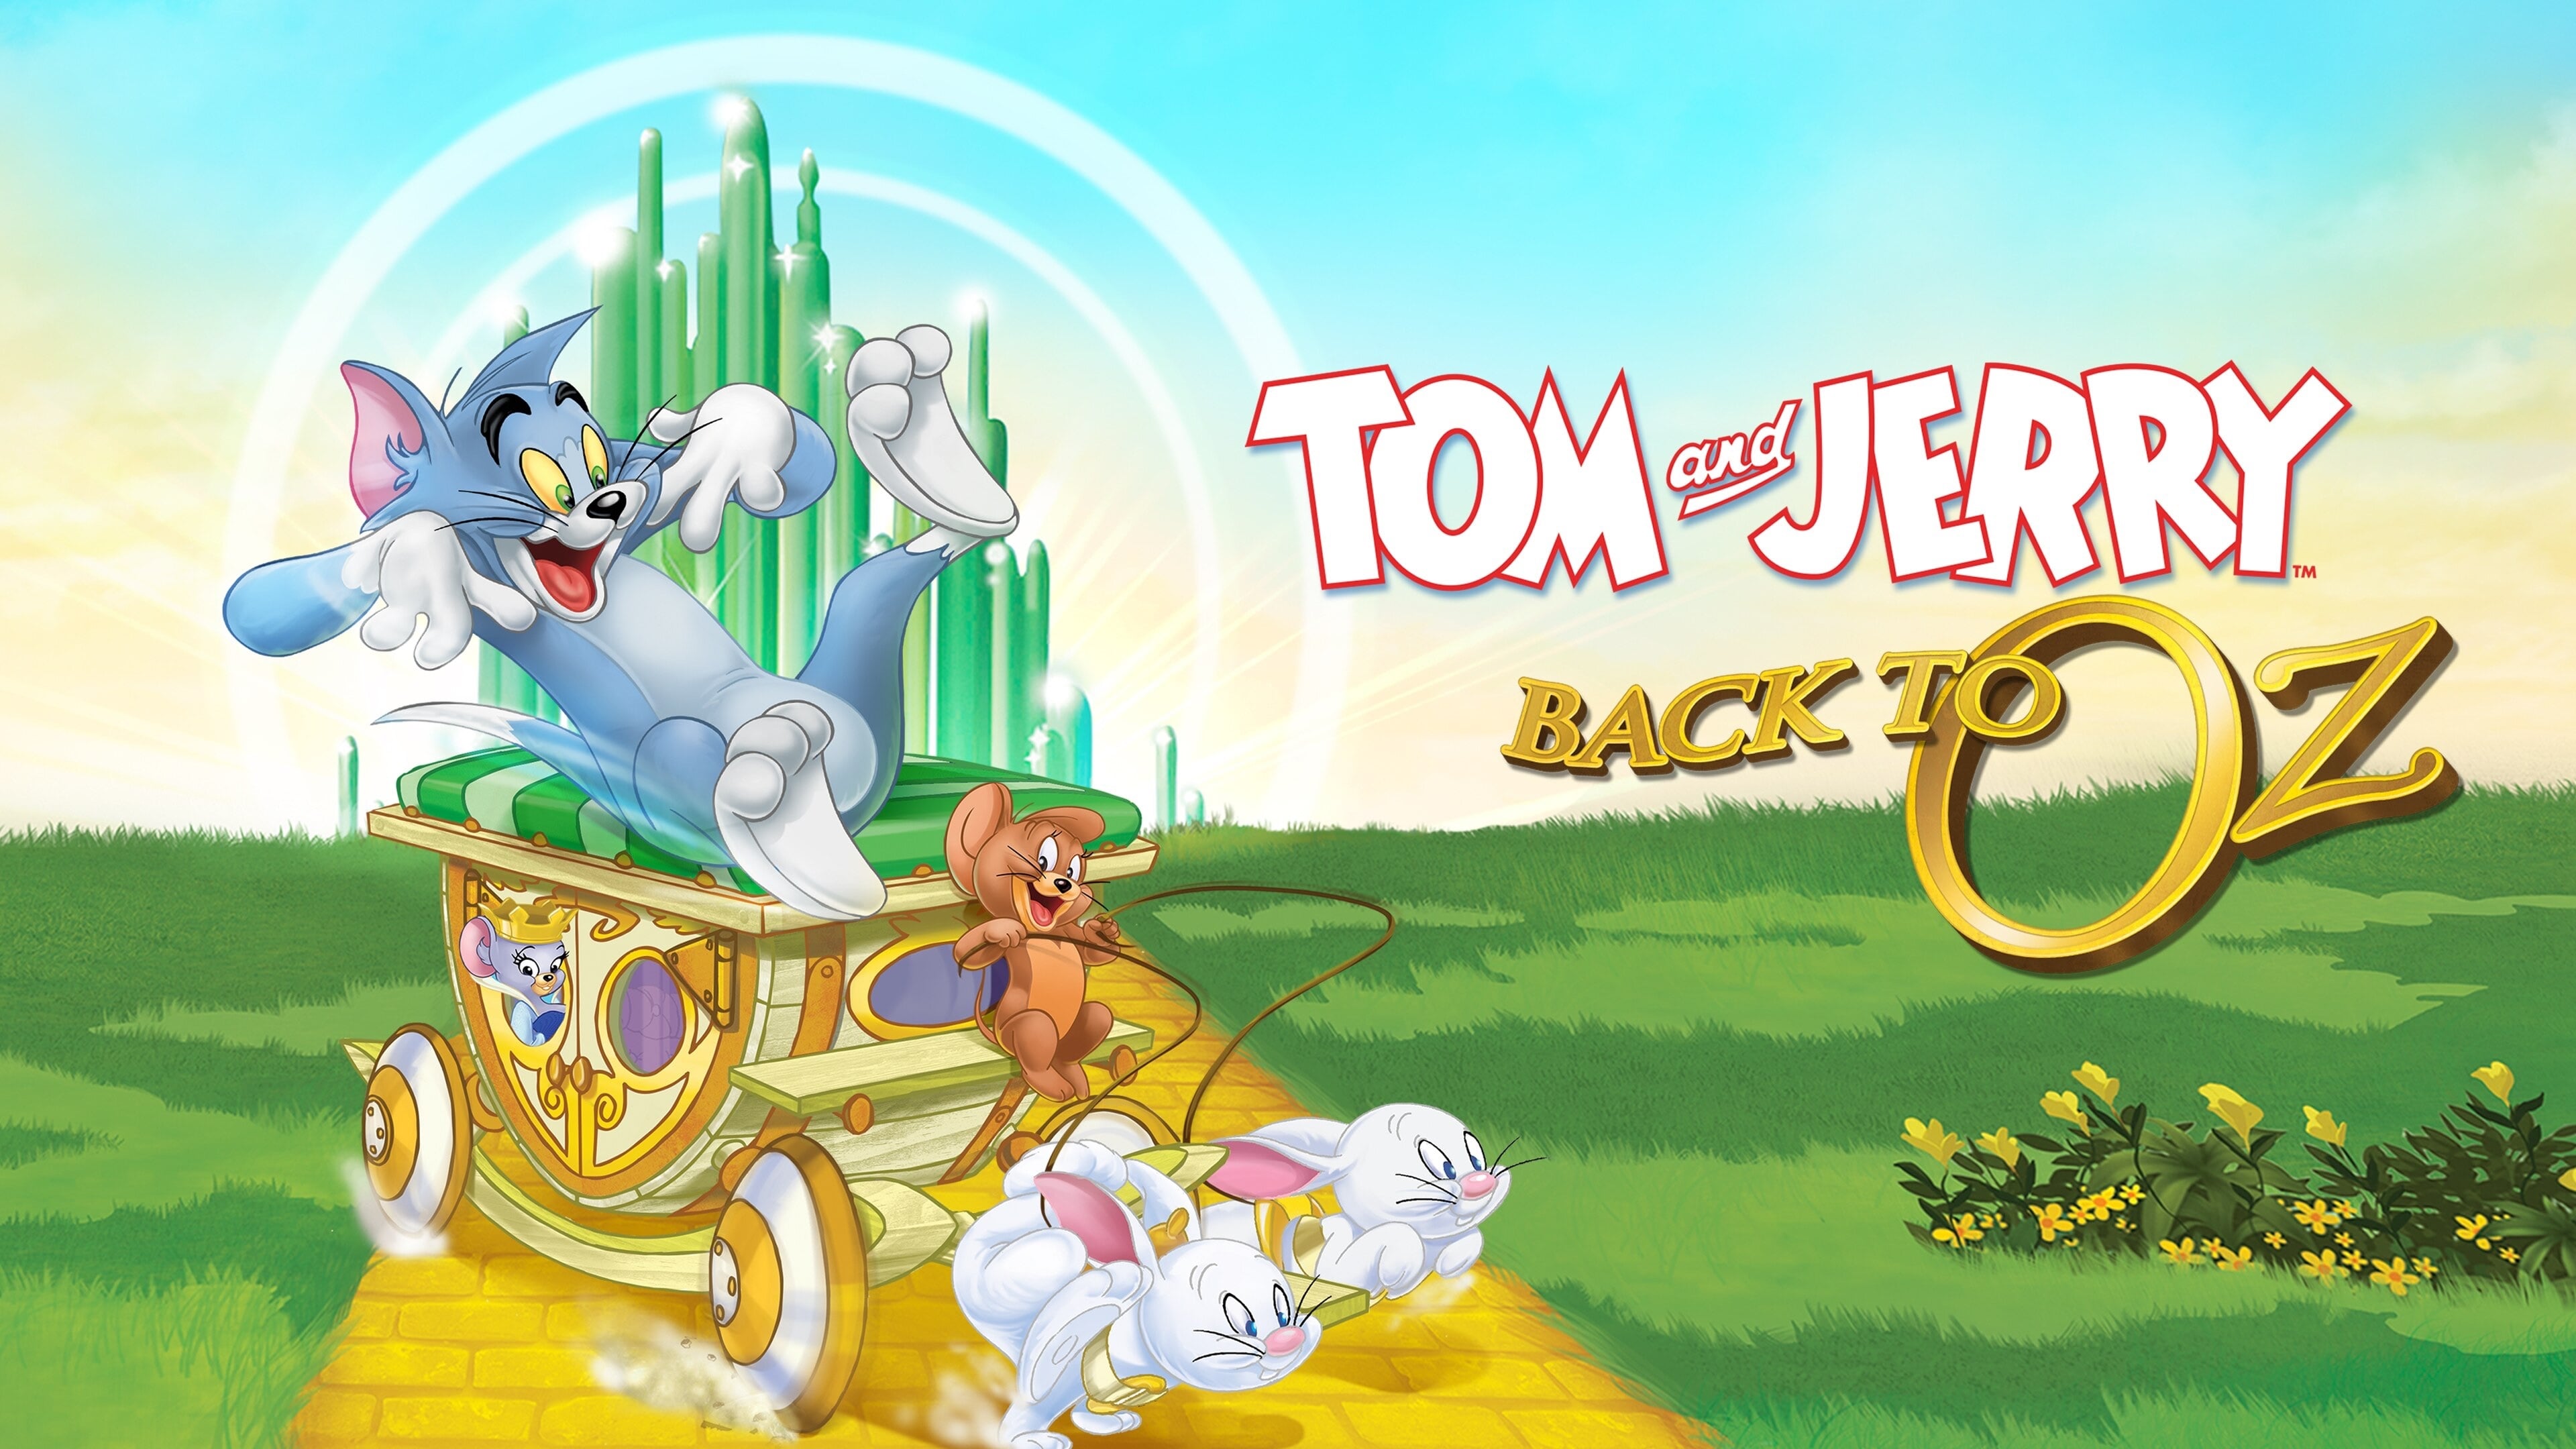 Tom y Jerry: Regreso al mundo de OZ